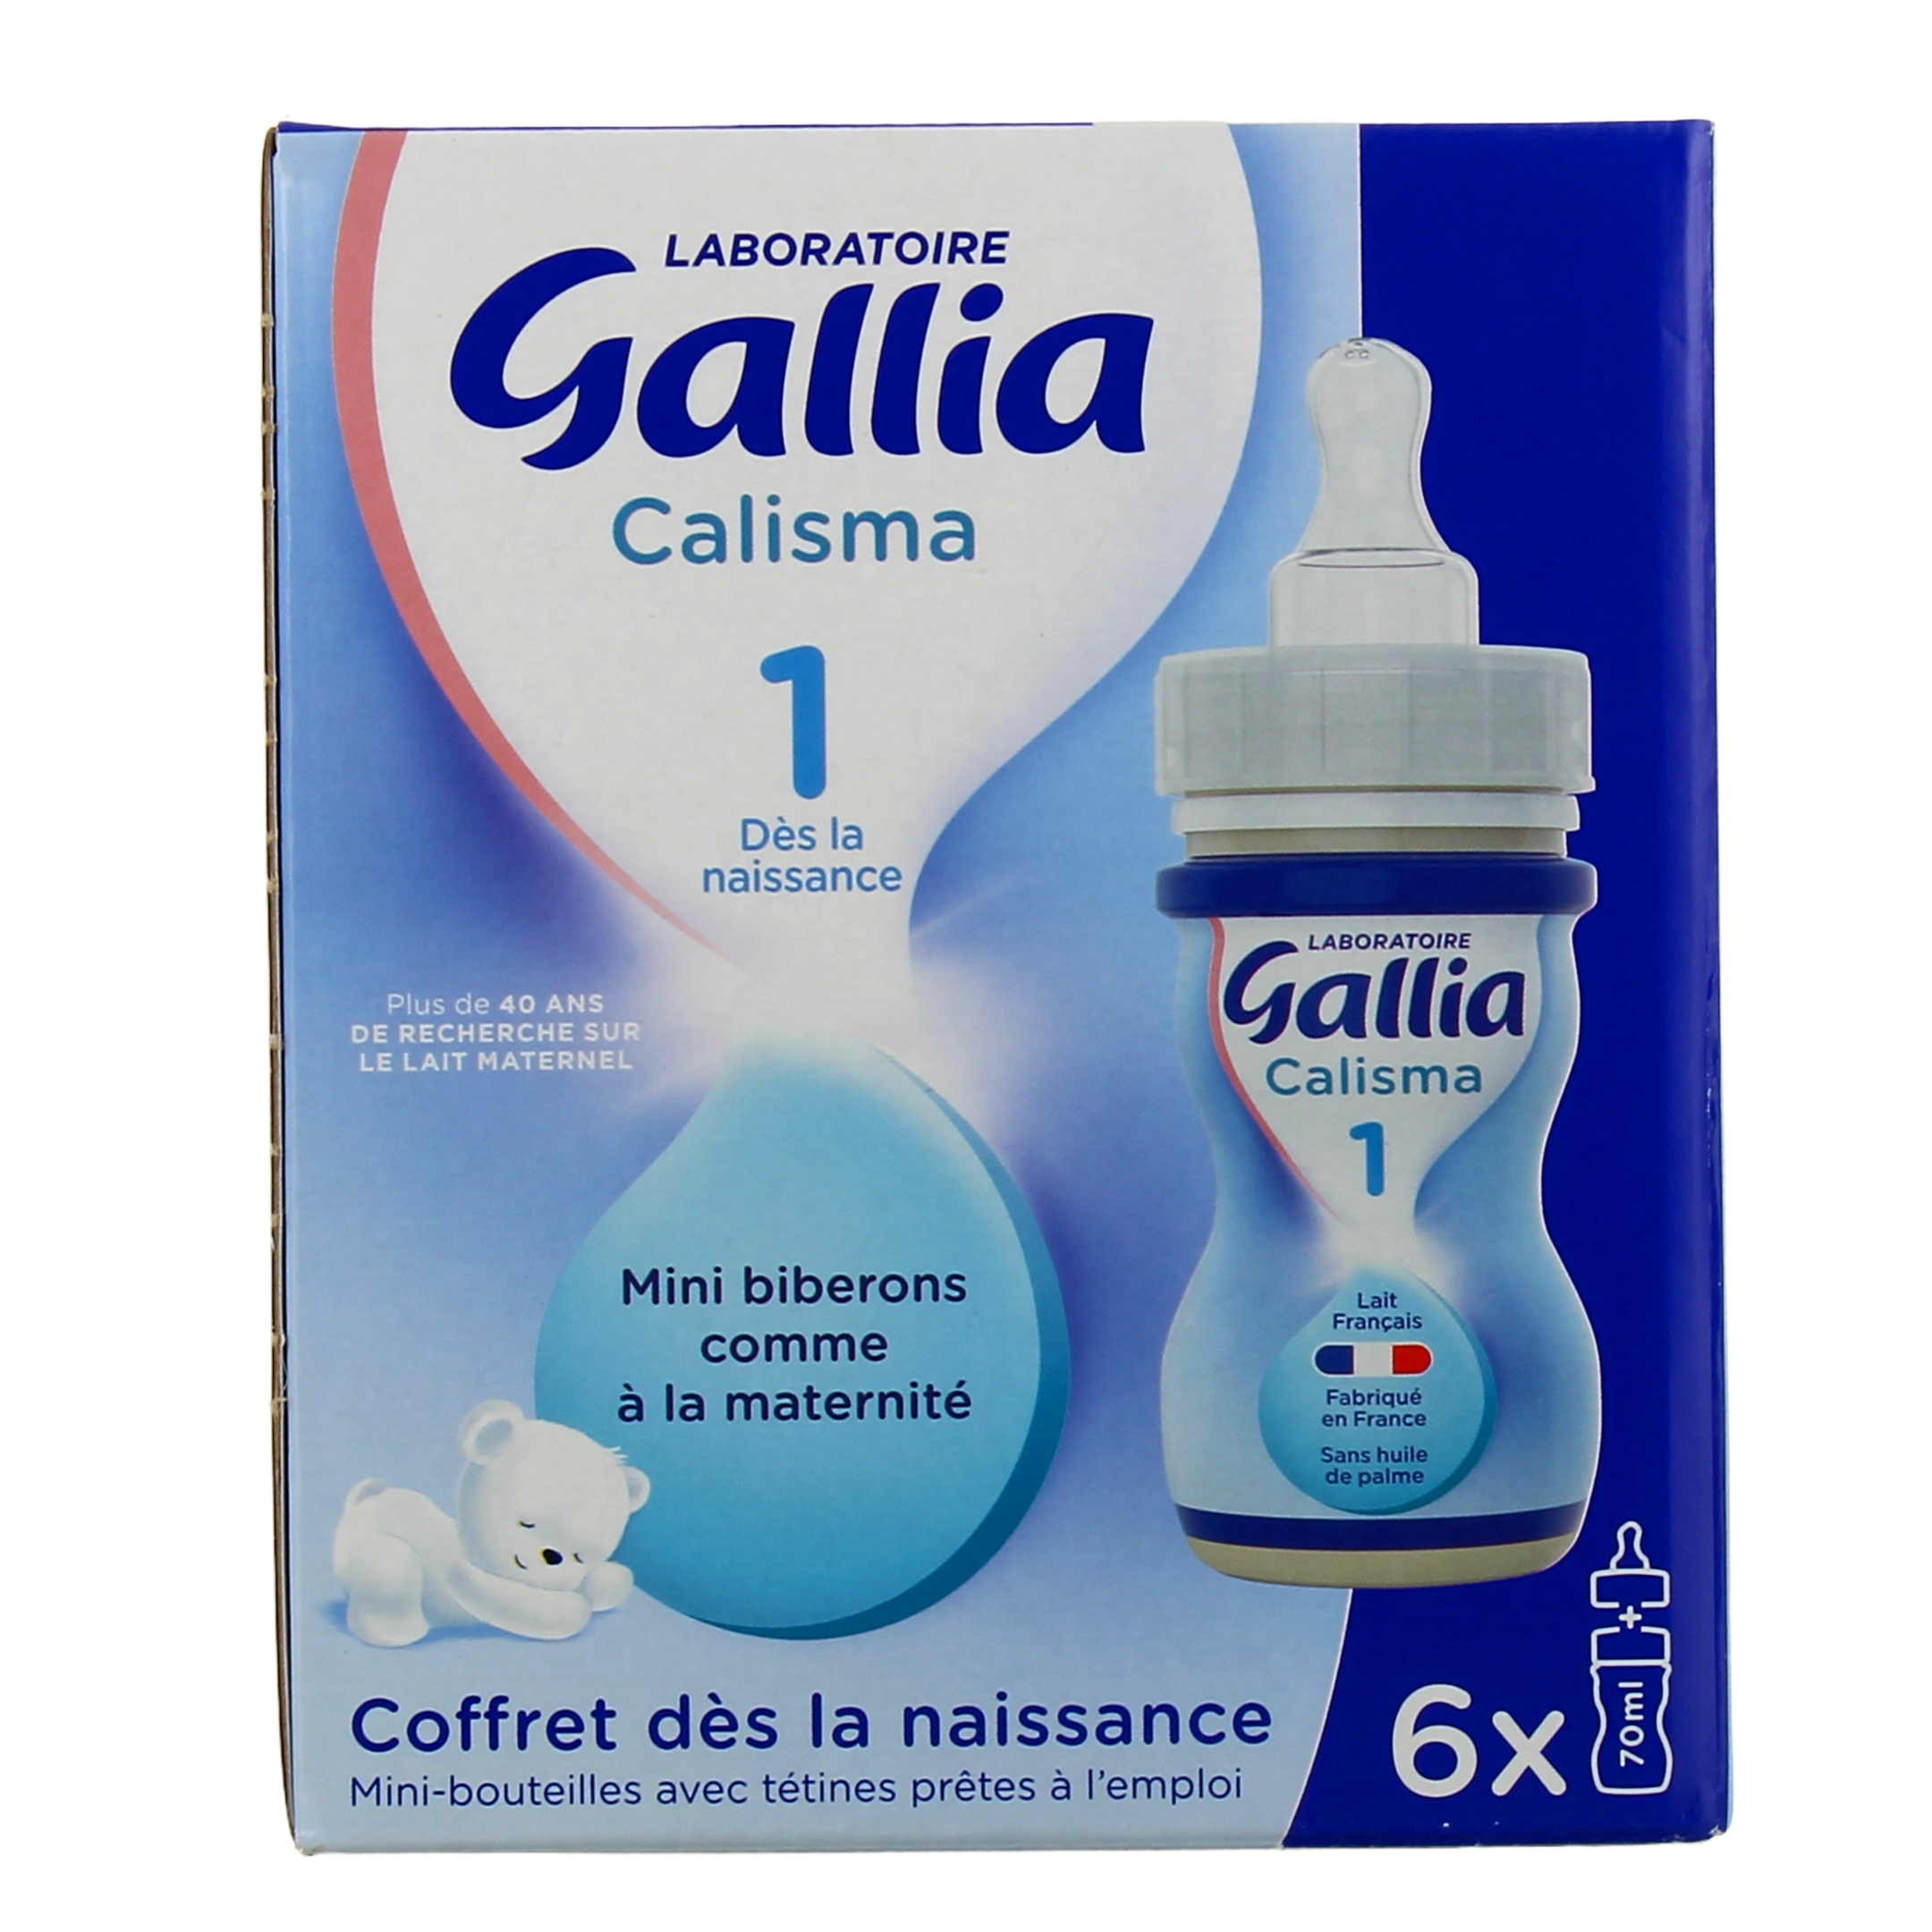 meSoigner - Gallia Calisma 1 Lait Liquide 4 Bouteilles/200ml